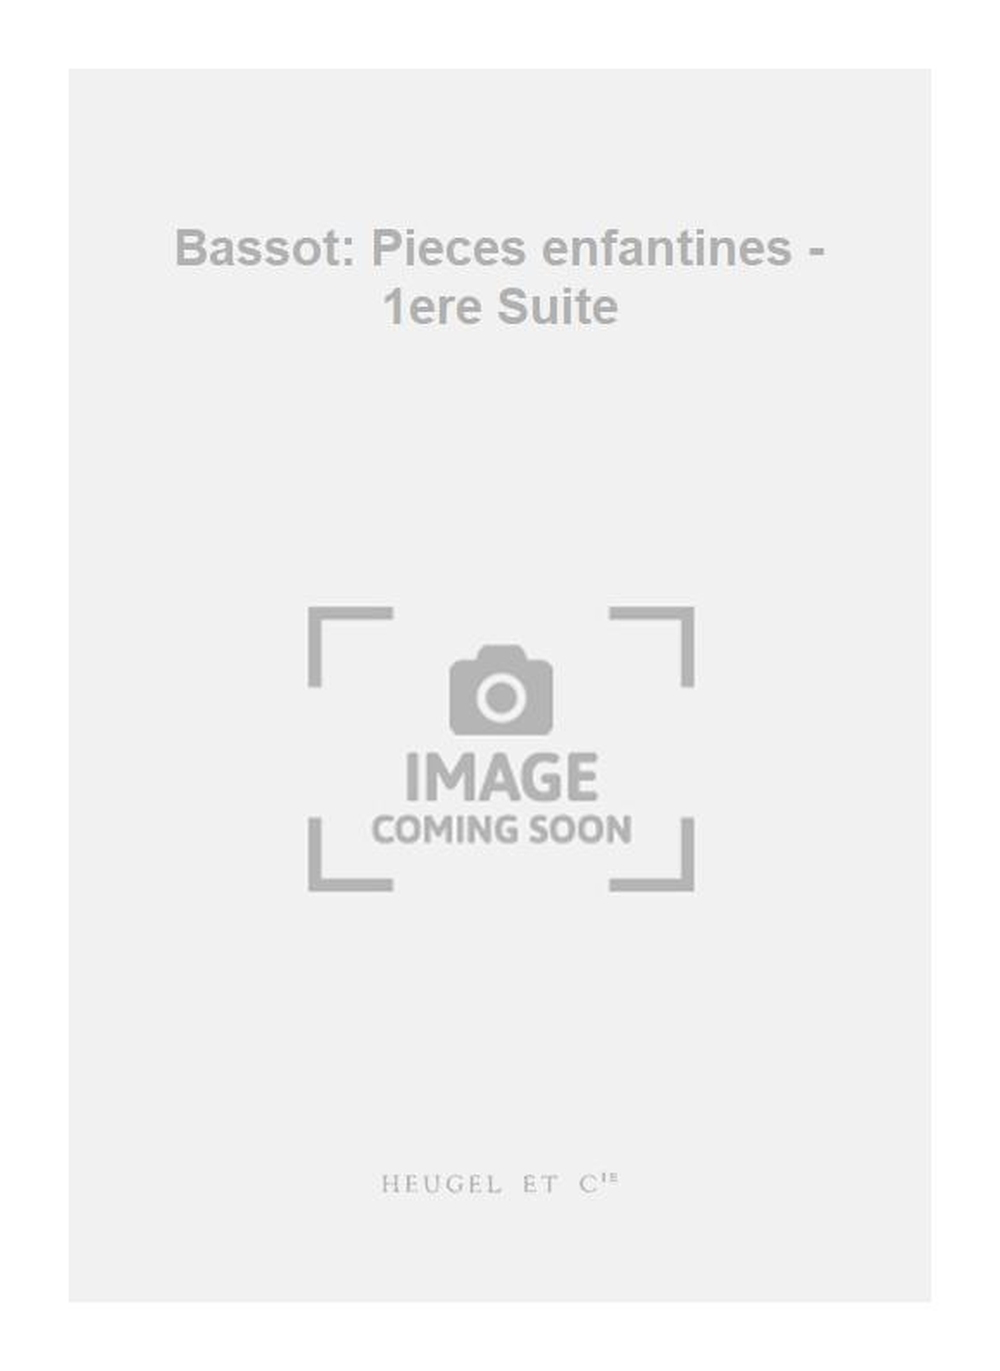 Nanine Bassot: Bassot: Pieces enfantines - 1ere Suite